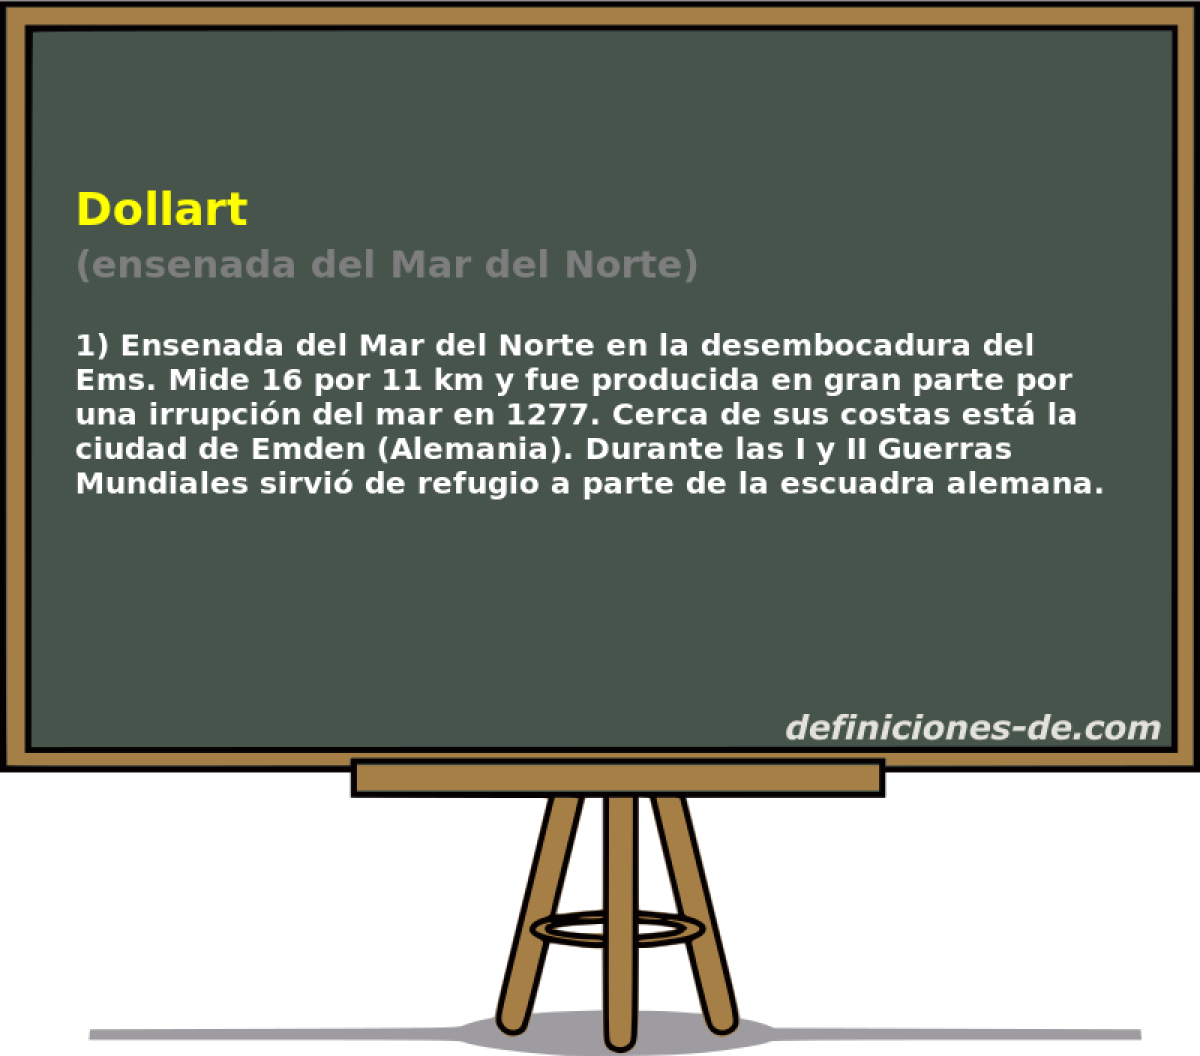 Dollart (ensenada del Mar del Norte)